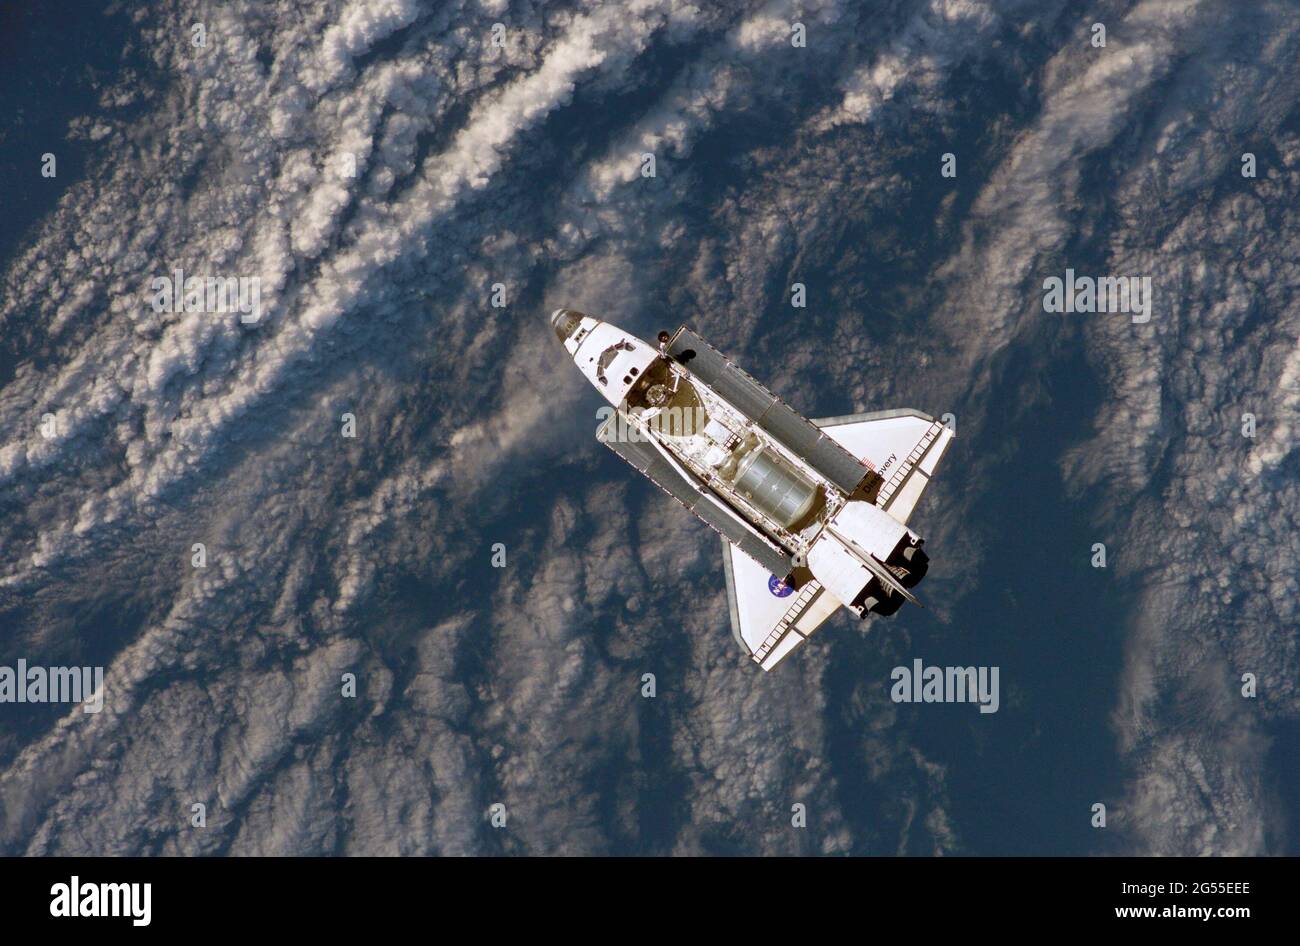 SCOPERTA DELLO SPACE SHUTTLE A BORDO - 08 Luglio 2006 - lo Space Shuttle Discovery vola a breve distanza dalla Stazione spaziale Internazionale per attracco b Foto Stock